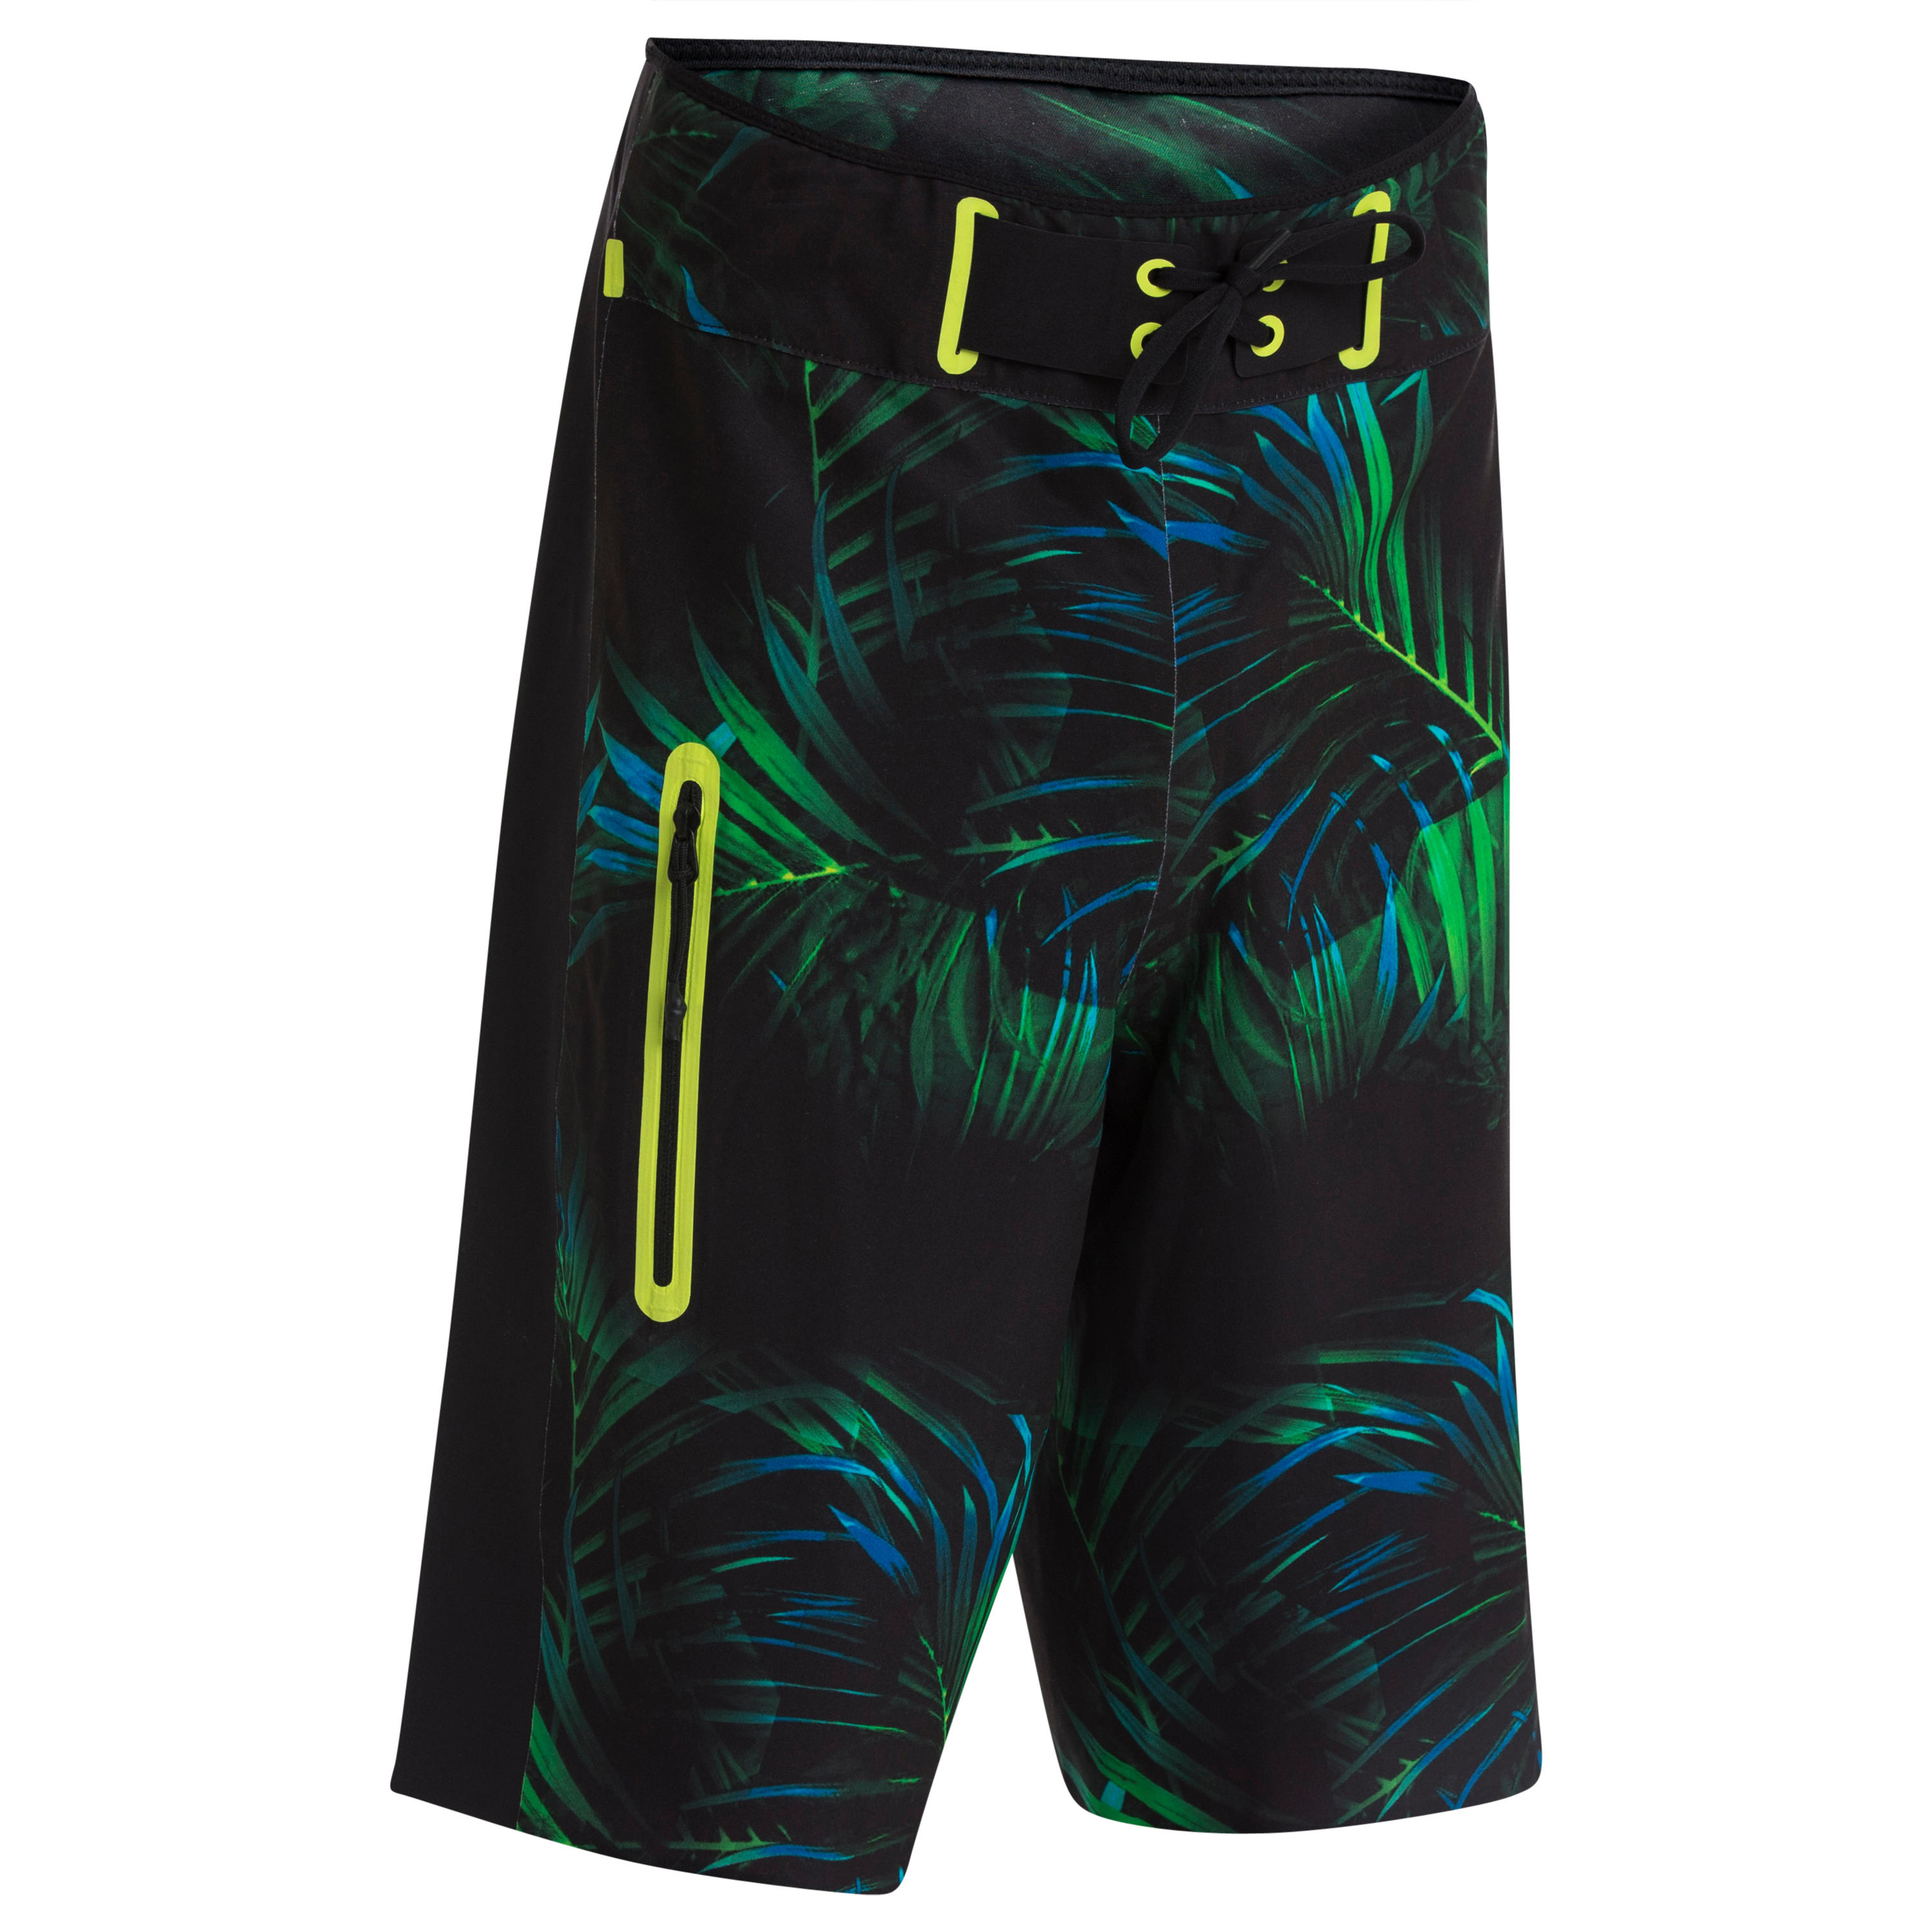 swim shorts/boardshort 900 black green 1/15